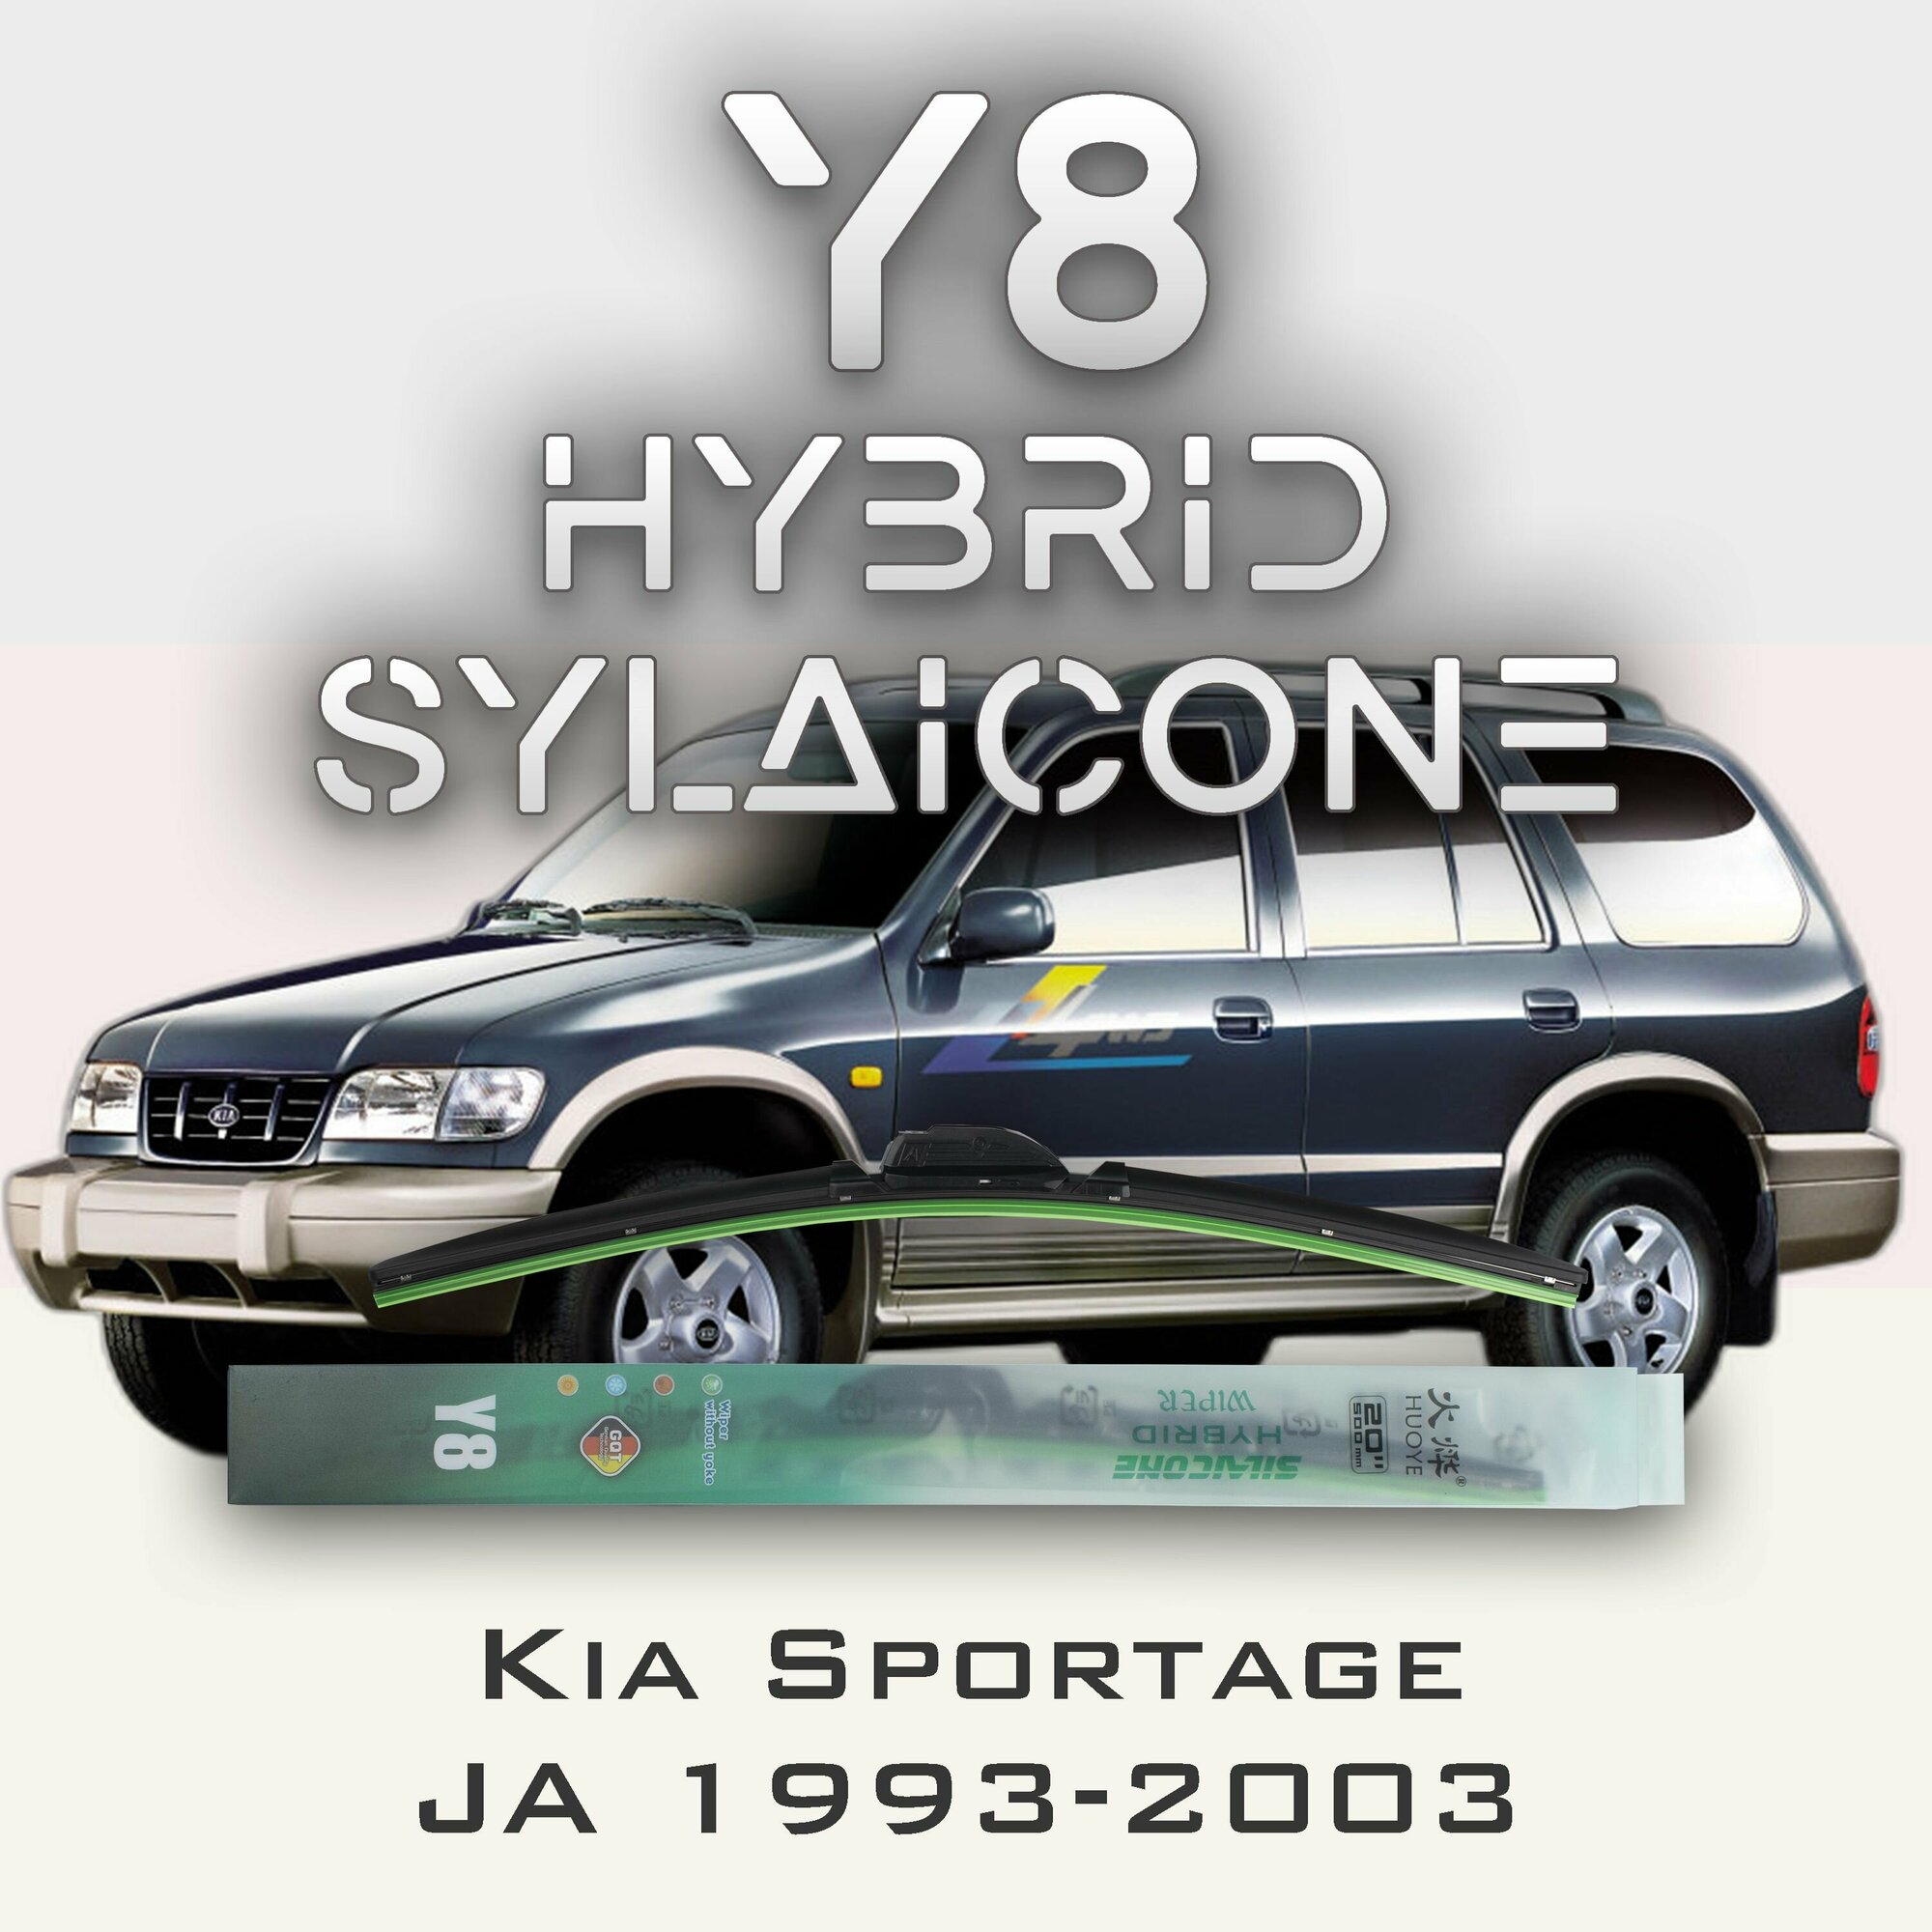 Комплект дворников 20" / 500 мм и 20" / 500 мм на Kia Sportage JA 1993-2003 Гибридных силиконовых щеток стеклоочистителя Y8 - Крючок (Hook / J-Hook)